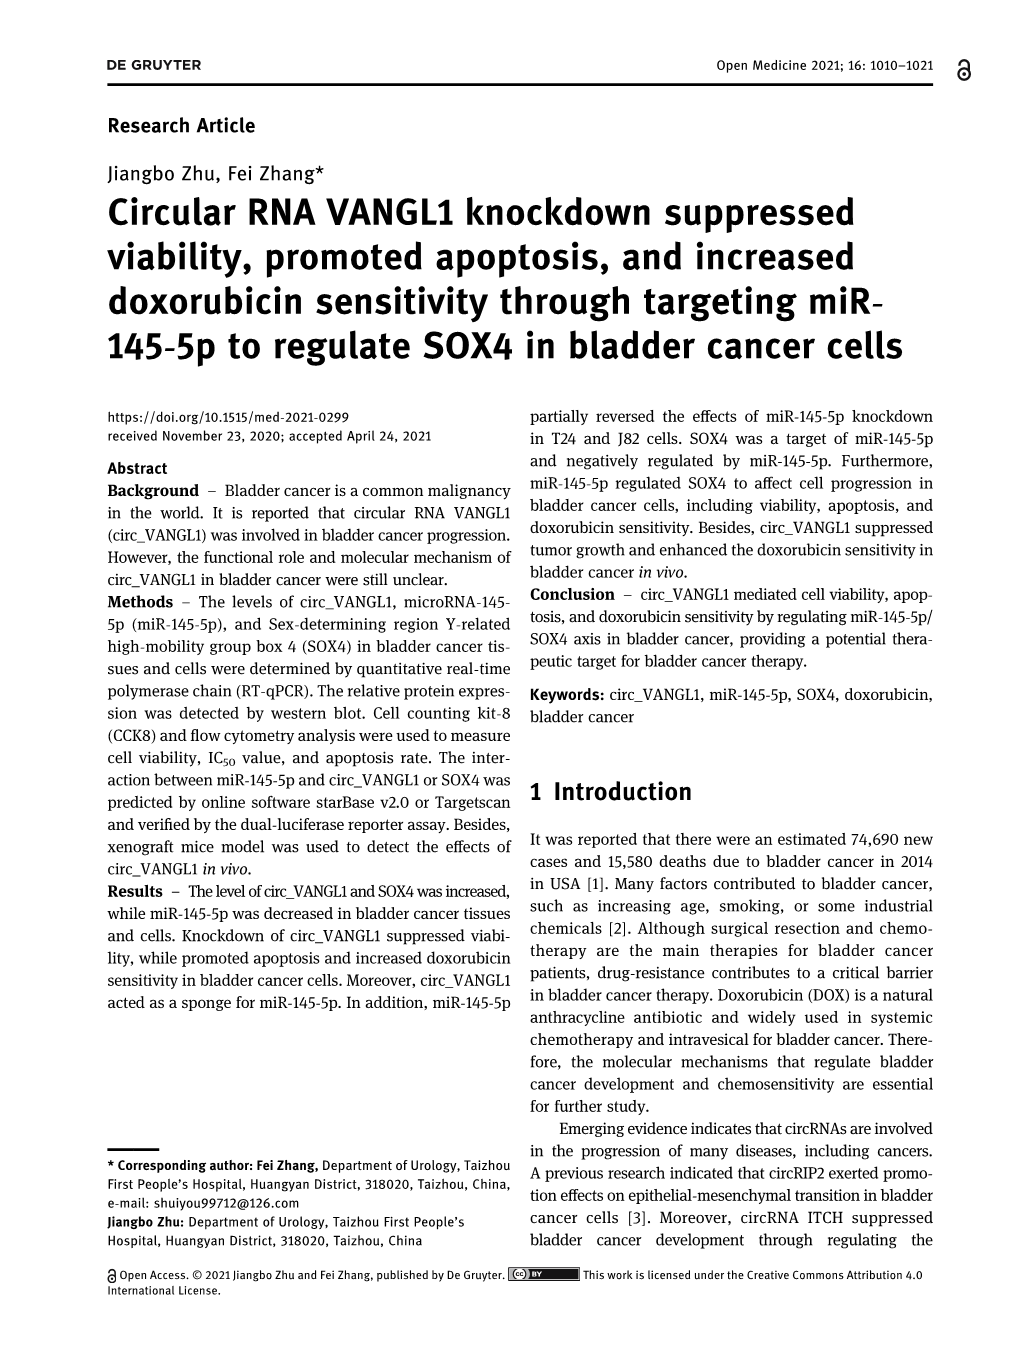 Circular RNA VANGL1 Knockdown Suppressed